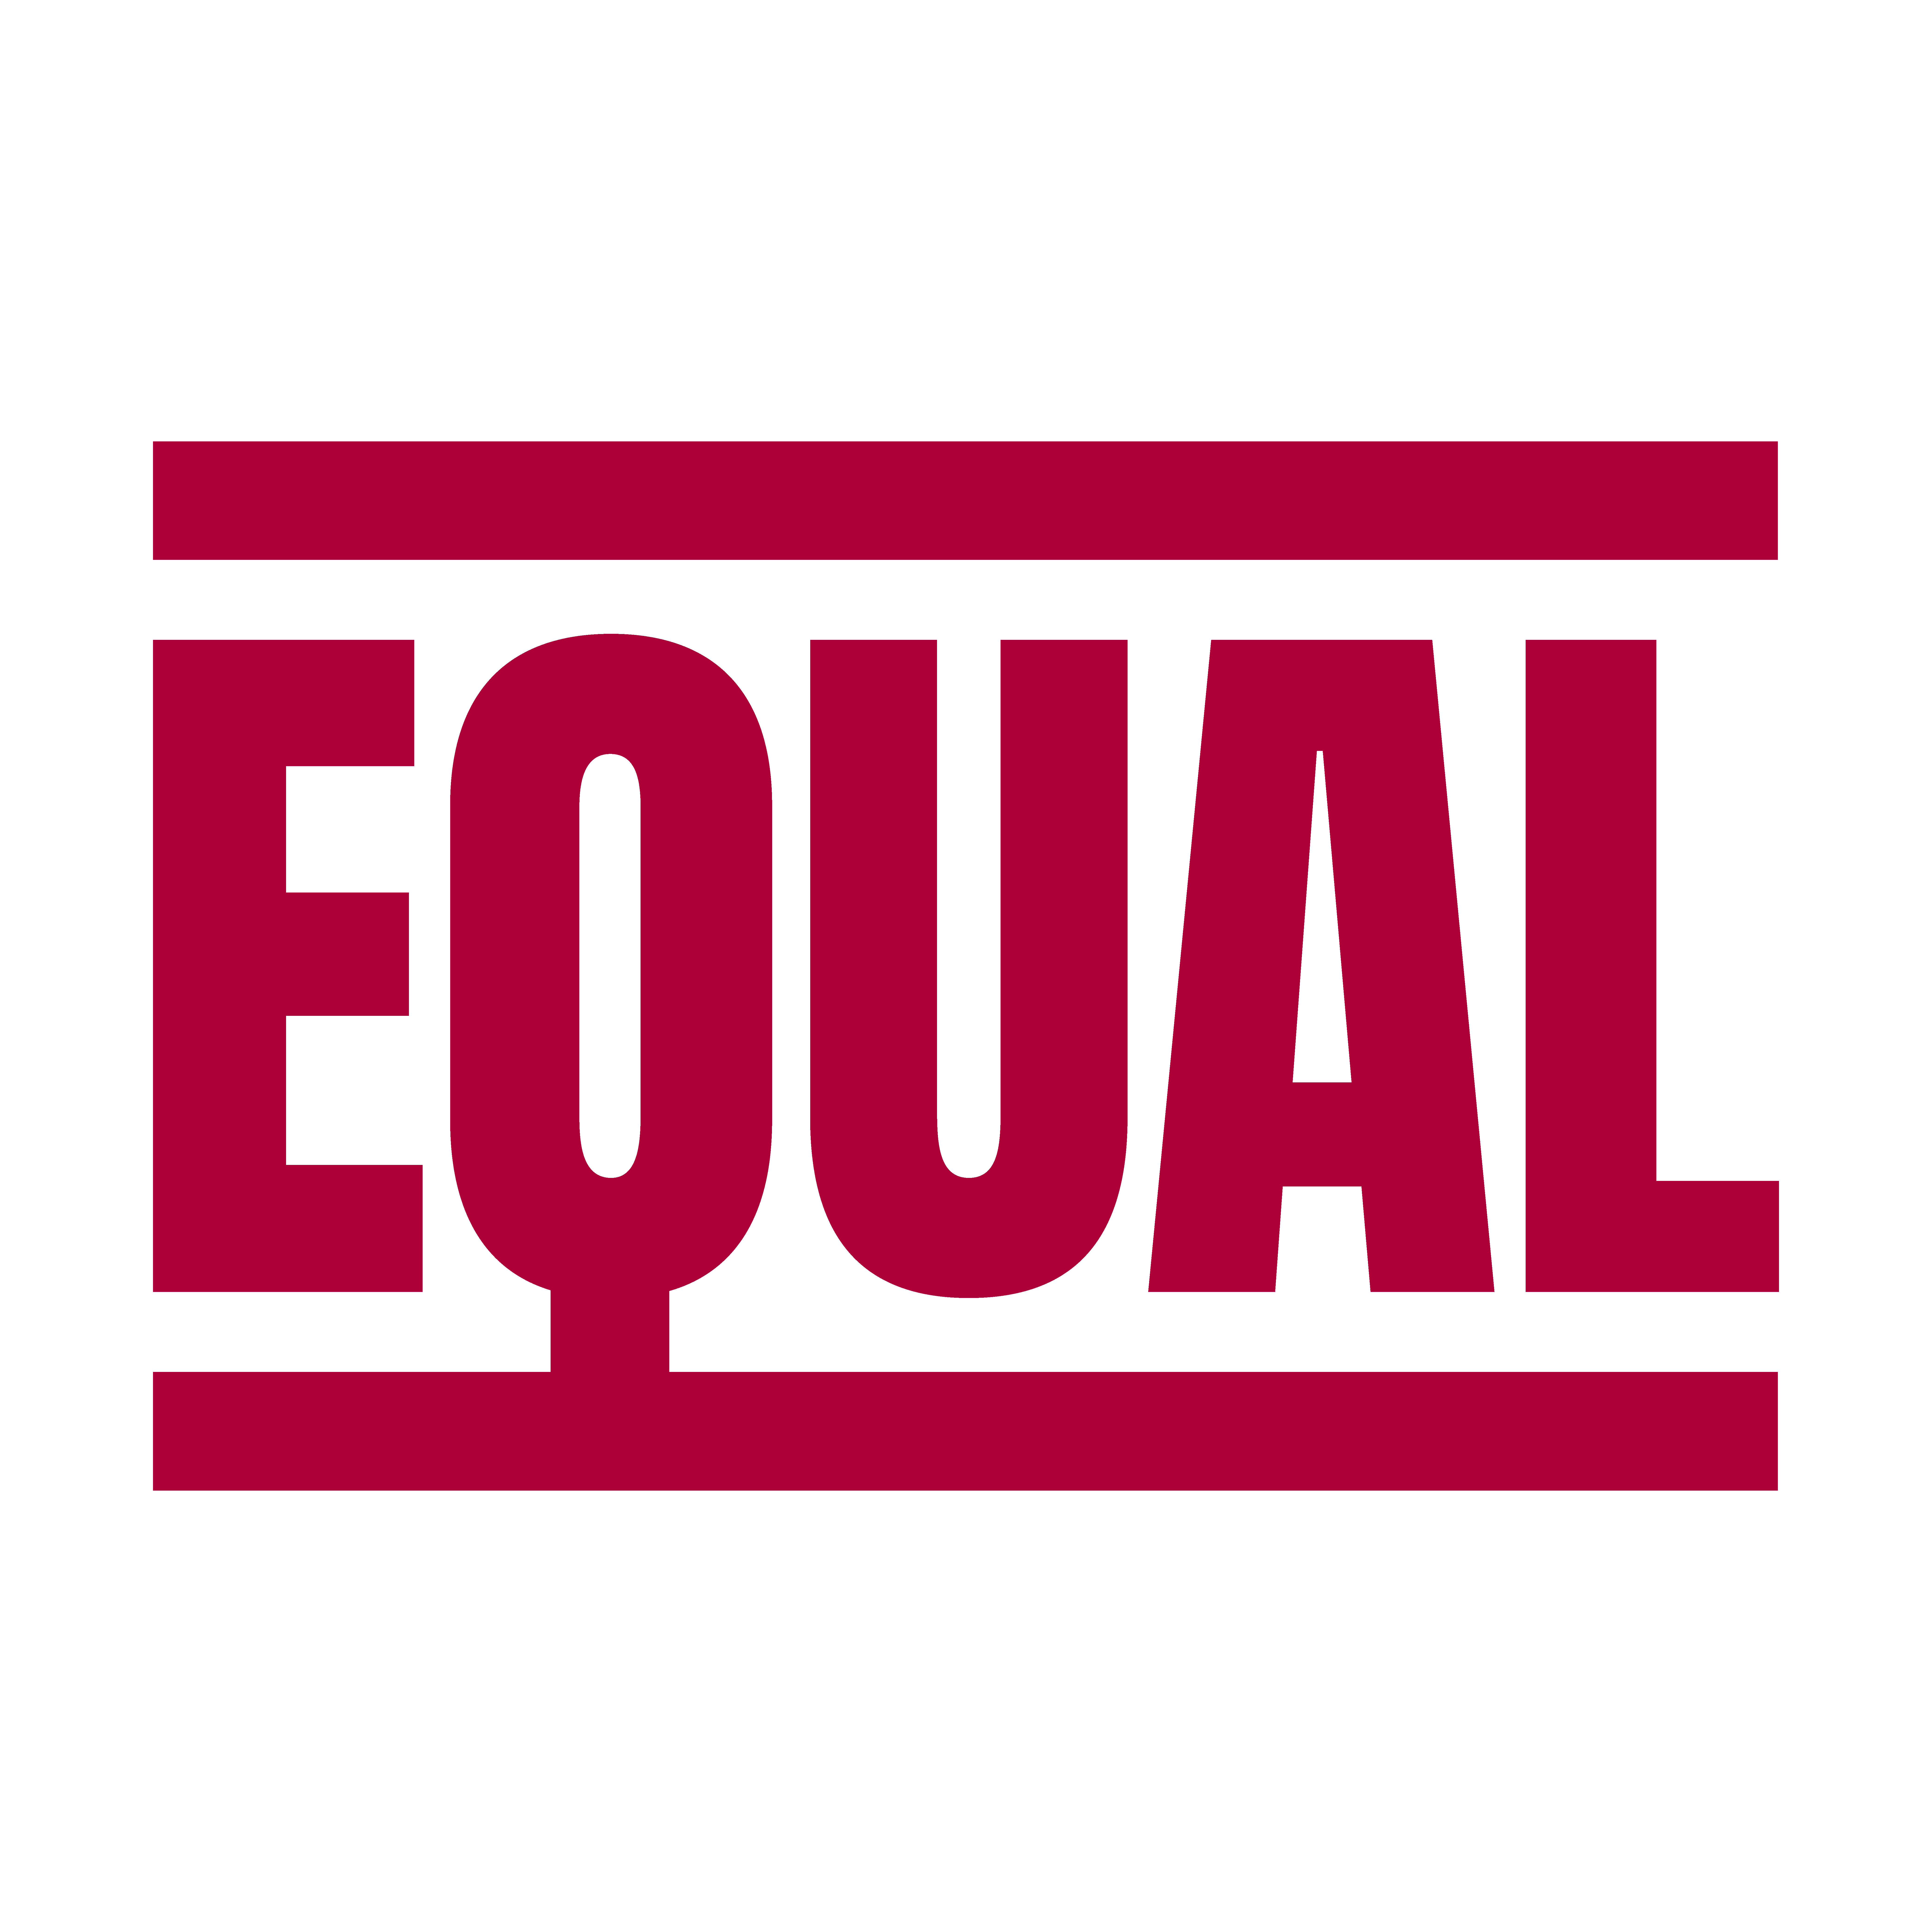 EQUAL – TOGETHER WE STAND FOR GENDER EQUALITY